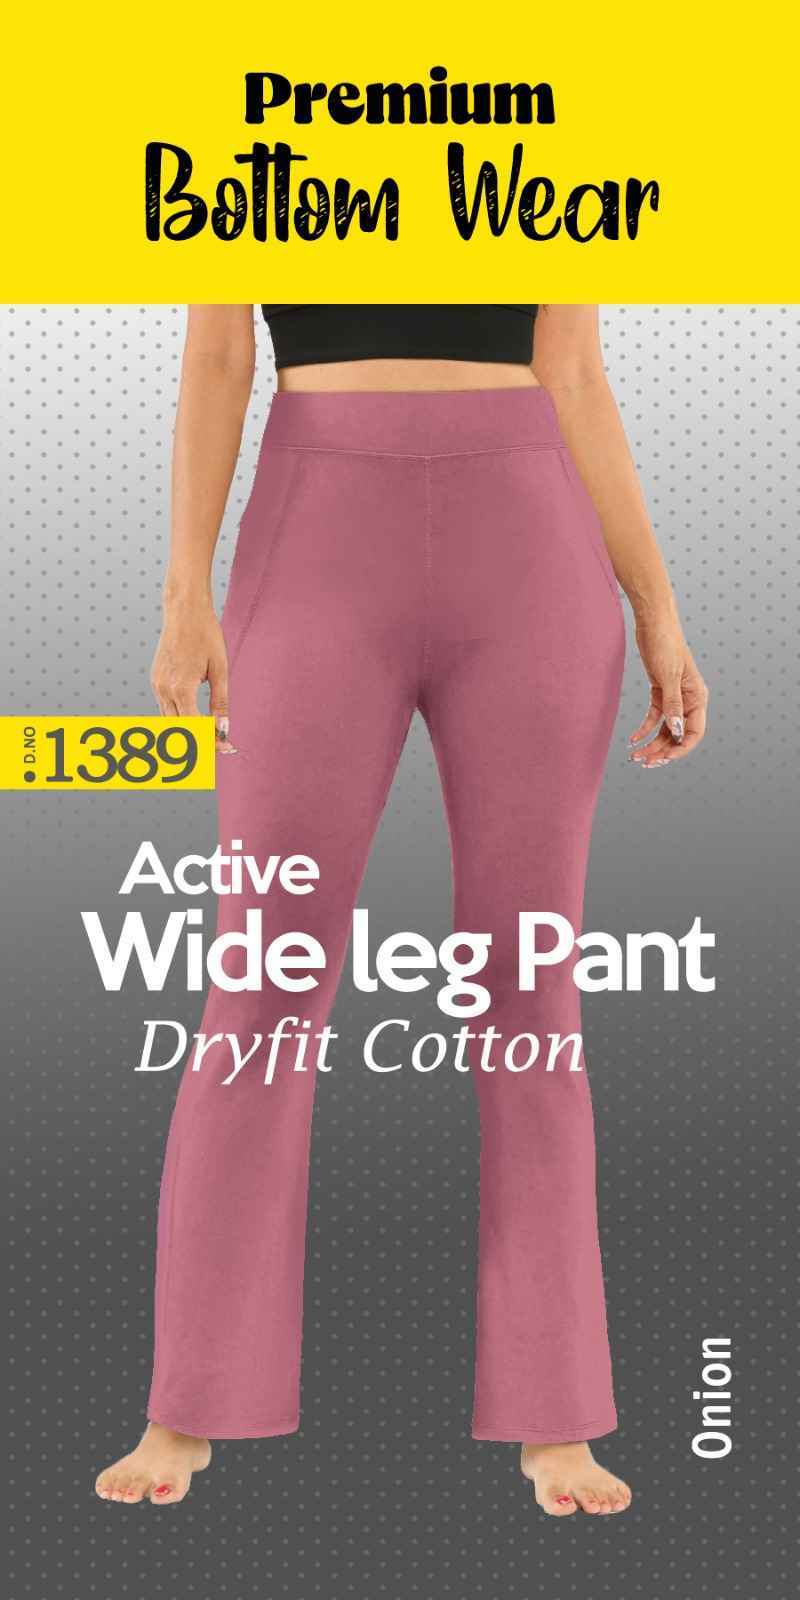 Premium Bottom Wear Wide Leg Pant 8 Pc Catalouge